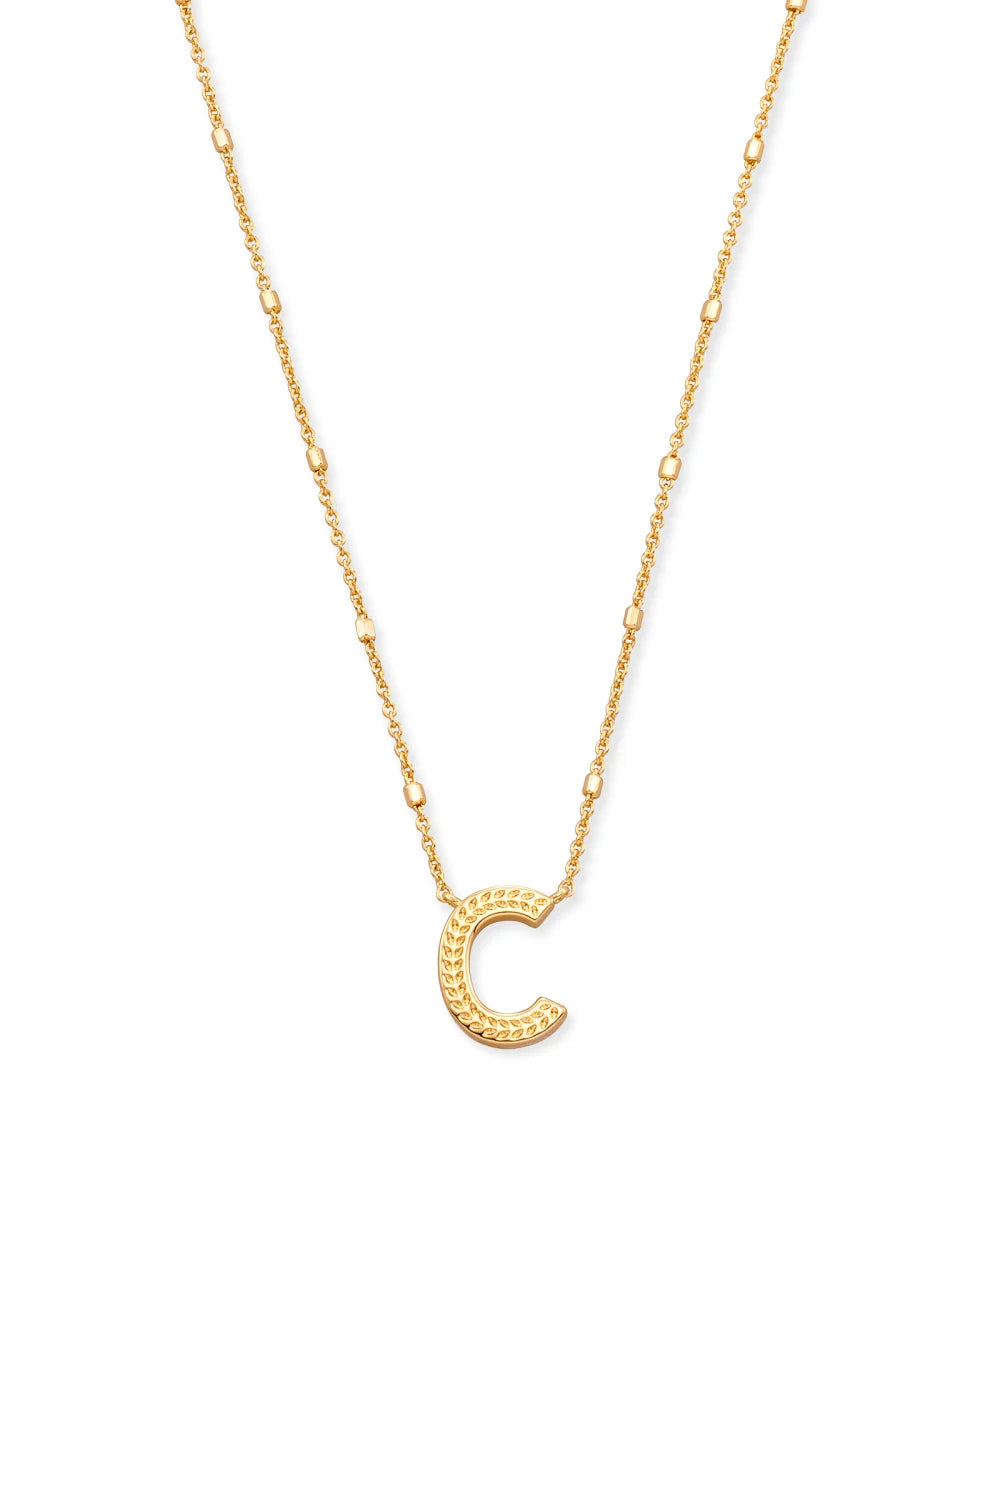 Kendra Scott: Letter C Pendant Necklace - Gold | Makk Fashions